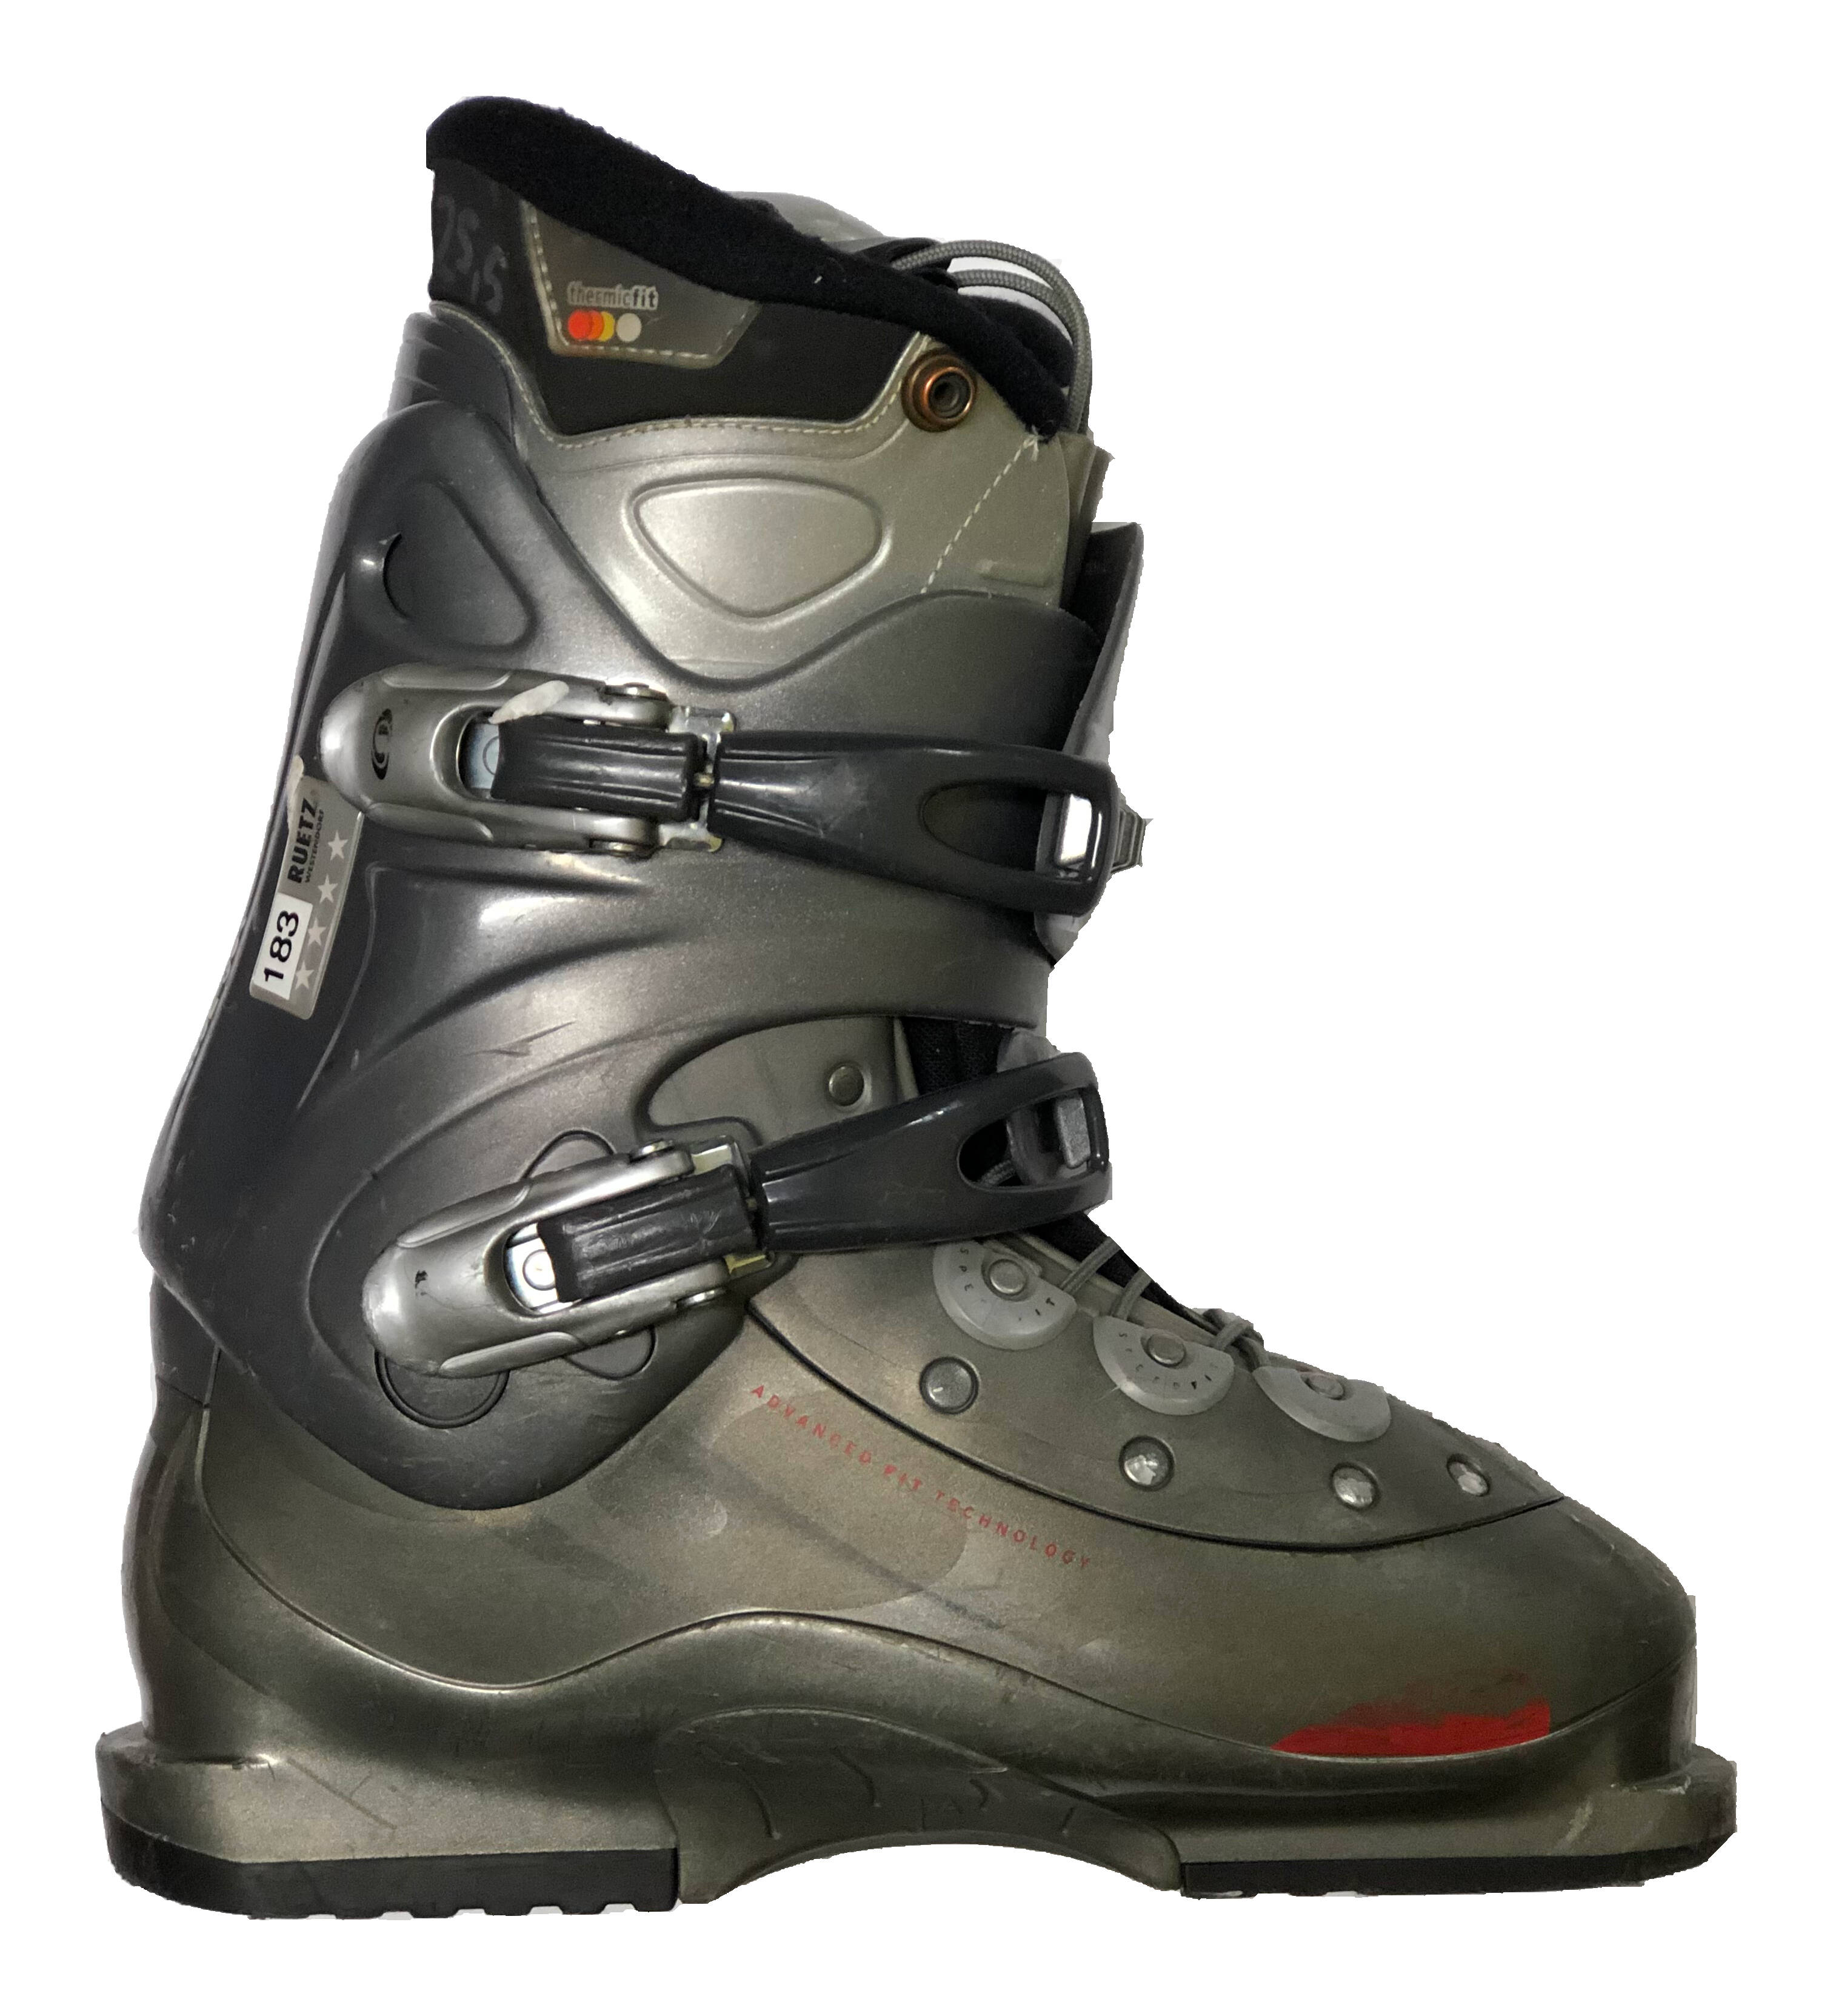 Używane buty narciarskie SALOMON 30,0/348mm rozmiar 45,5 :: Sklep Sportowy  - outlet sportowy, koncówki kolekcji, wyprzedaże, narty, deski, wiązania,  sprzet narciarski, buty sportowe